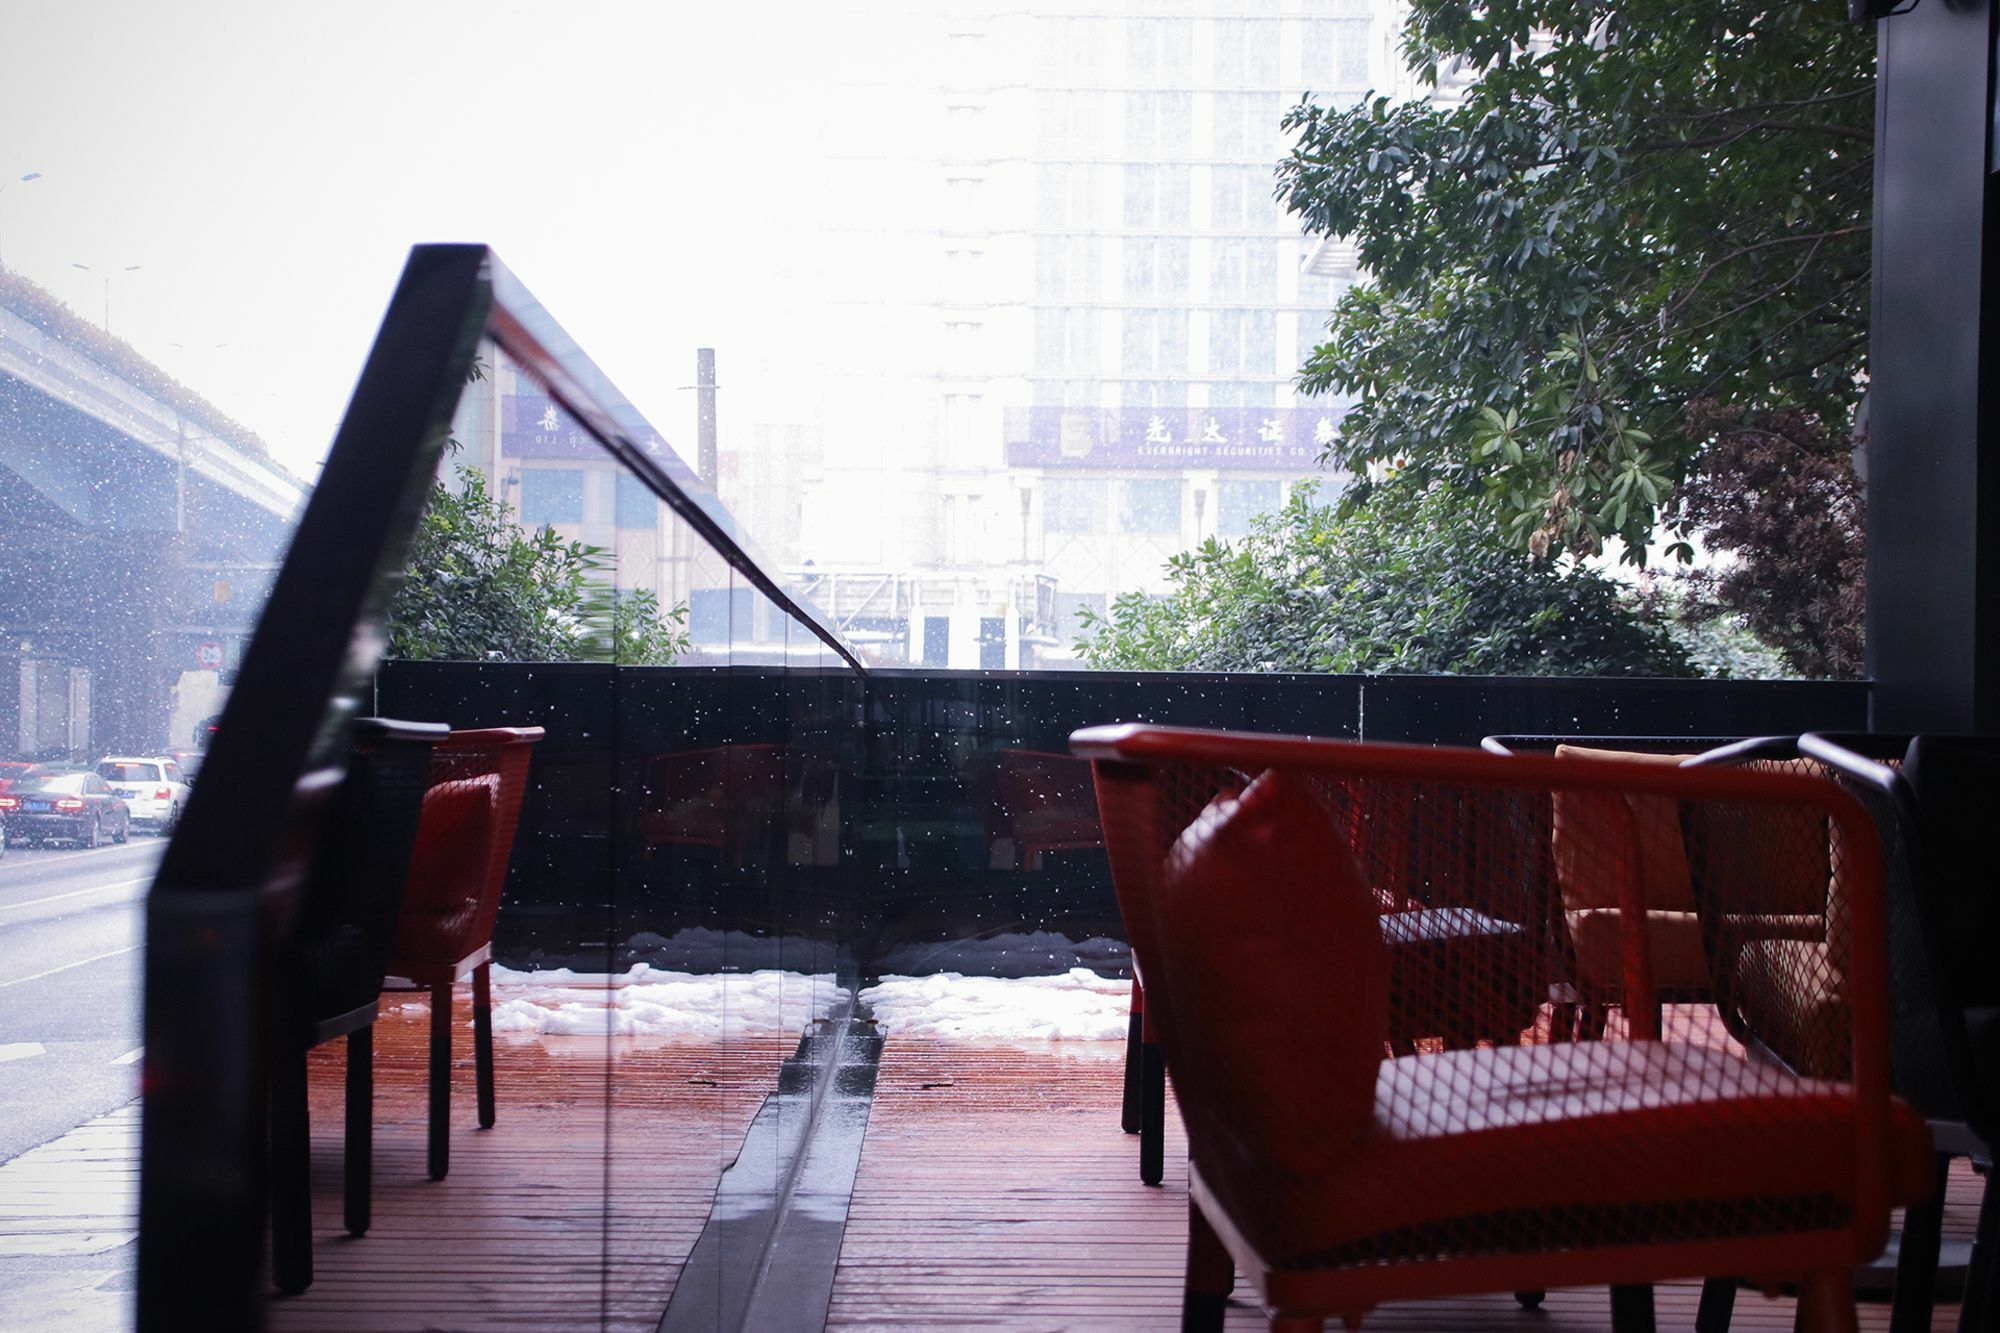 Citigo Hotel West Lake Hangzhou Exterior photo